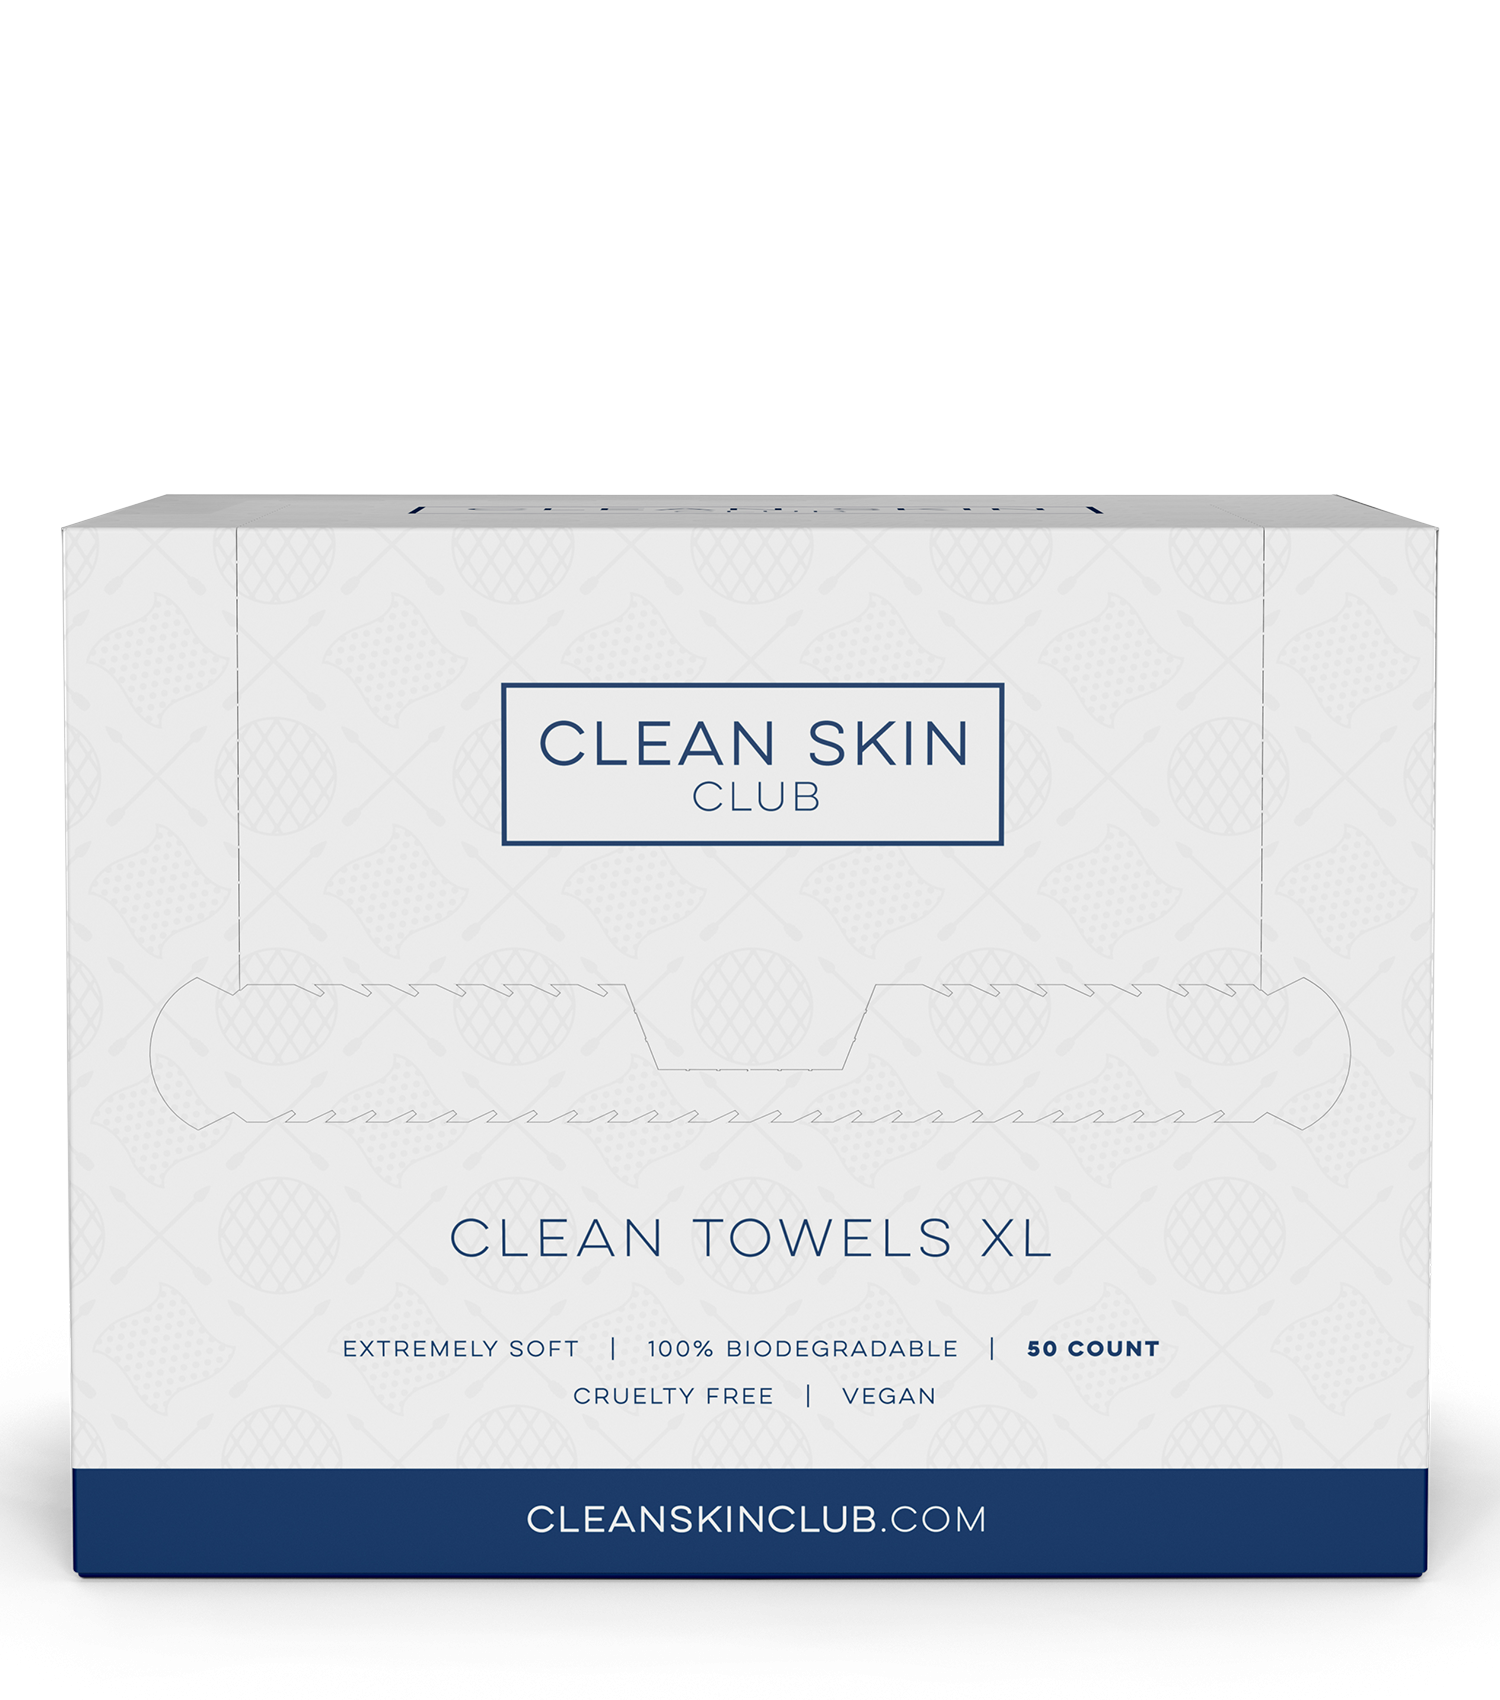 Clean Skin Club Clean Towels XL Clean Skin Club Clean Towels XL 1